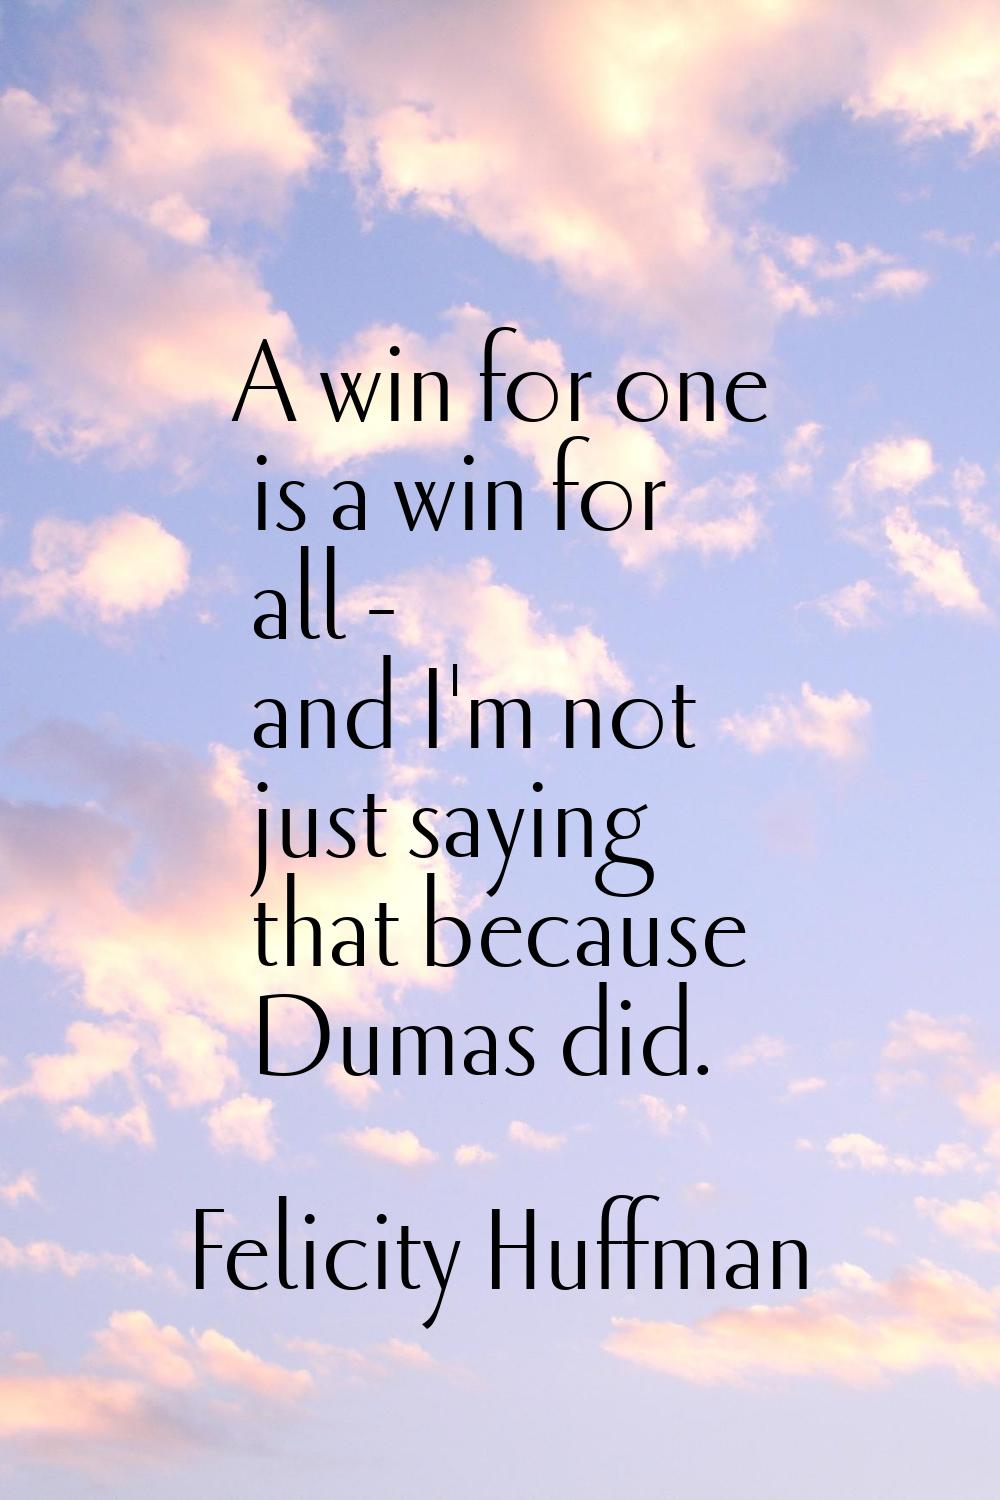 A win for one is a win for all - and I'm not just saying that because Dumas did.